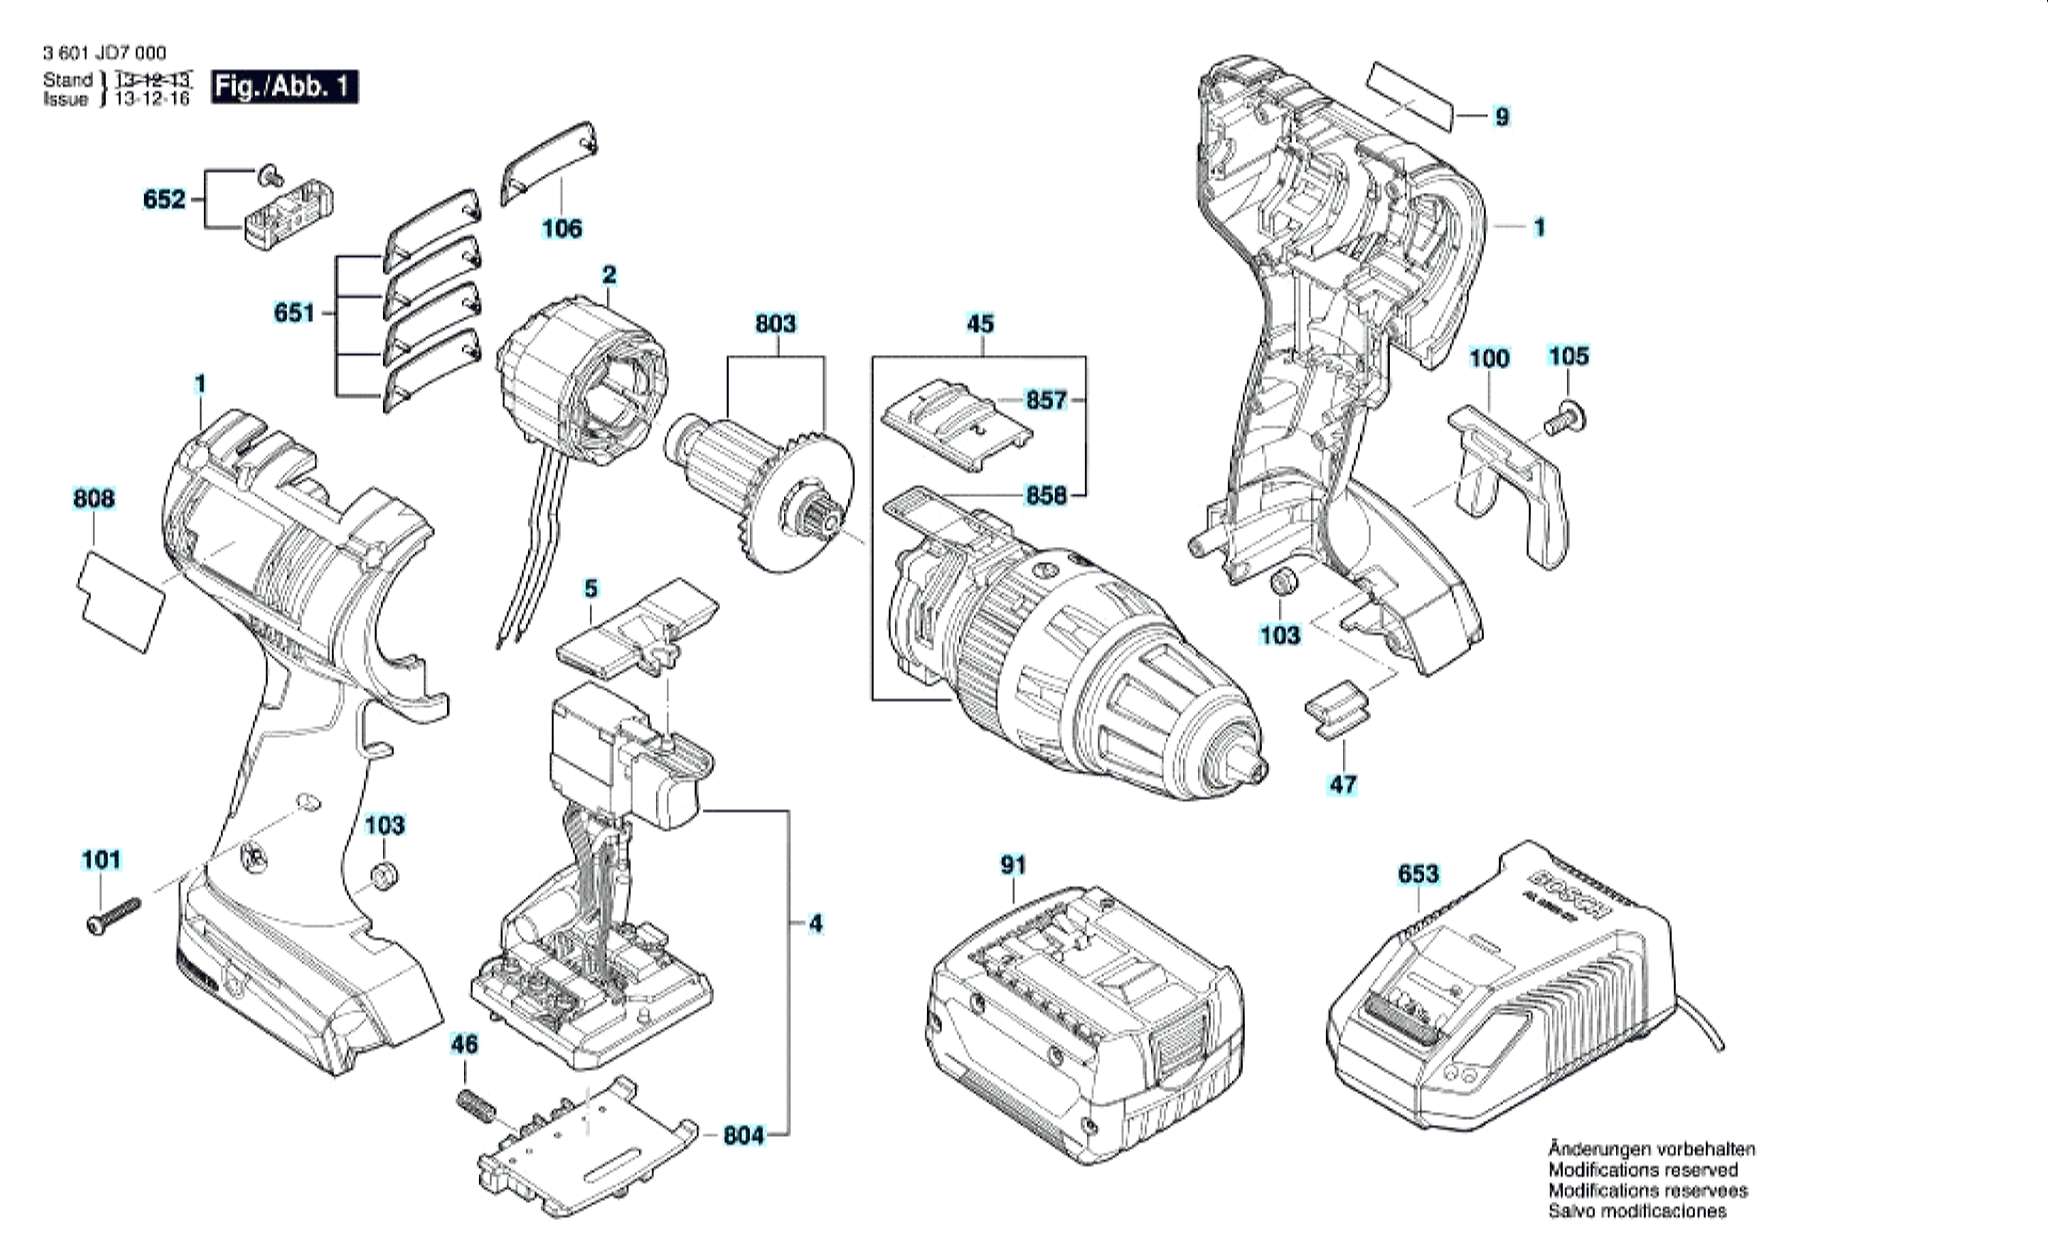 Запчасти, схема и деталировка Bosch GSB 14,4 V-EC (ТИП 3601JD7000)